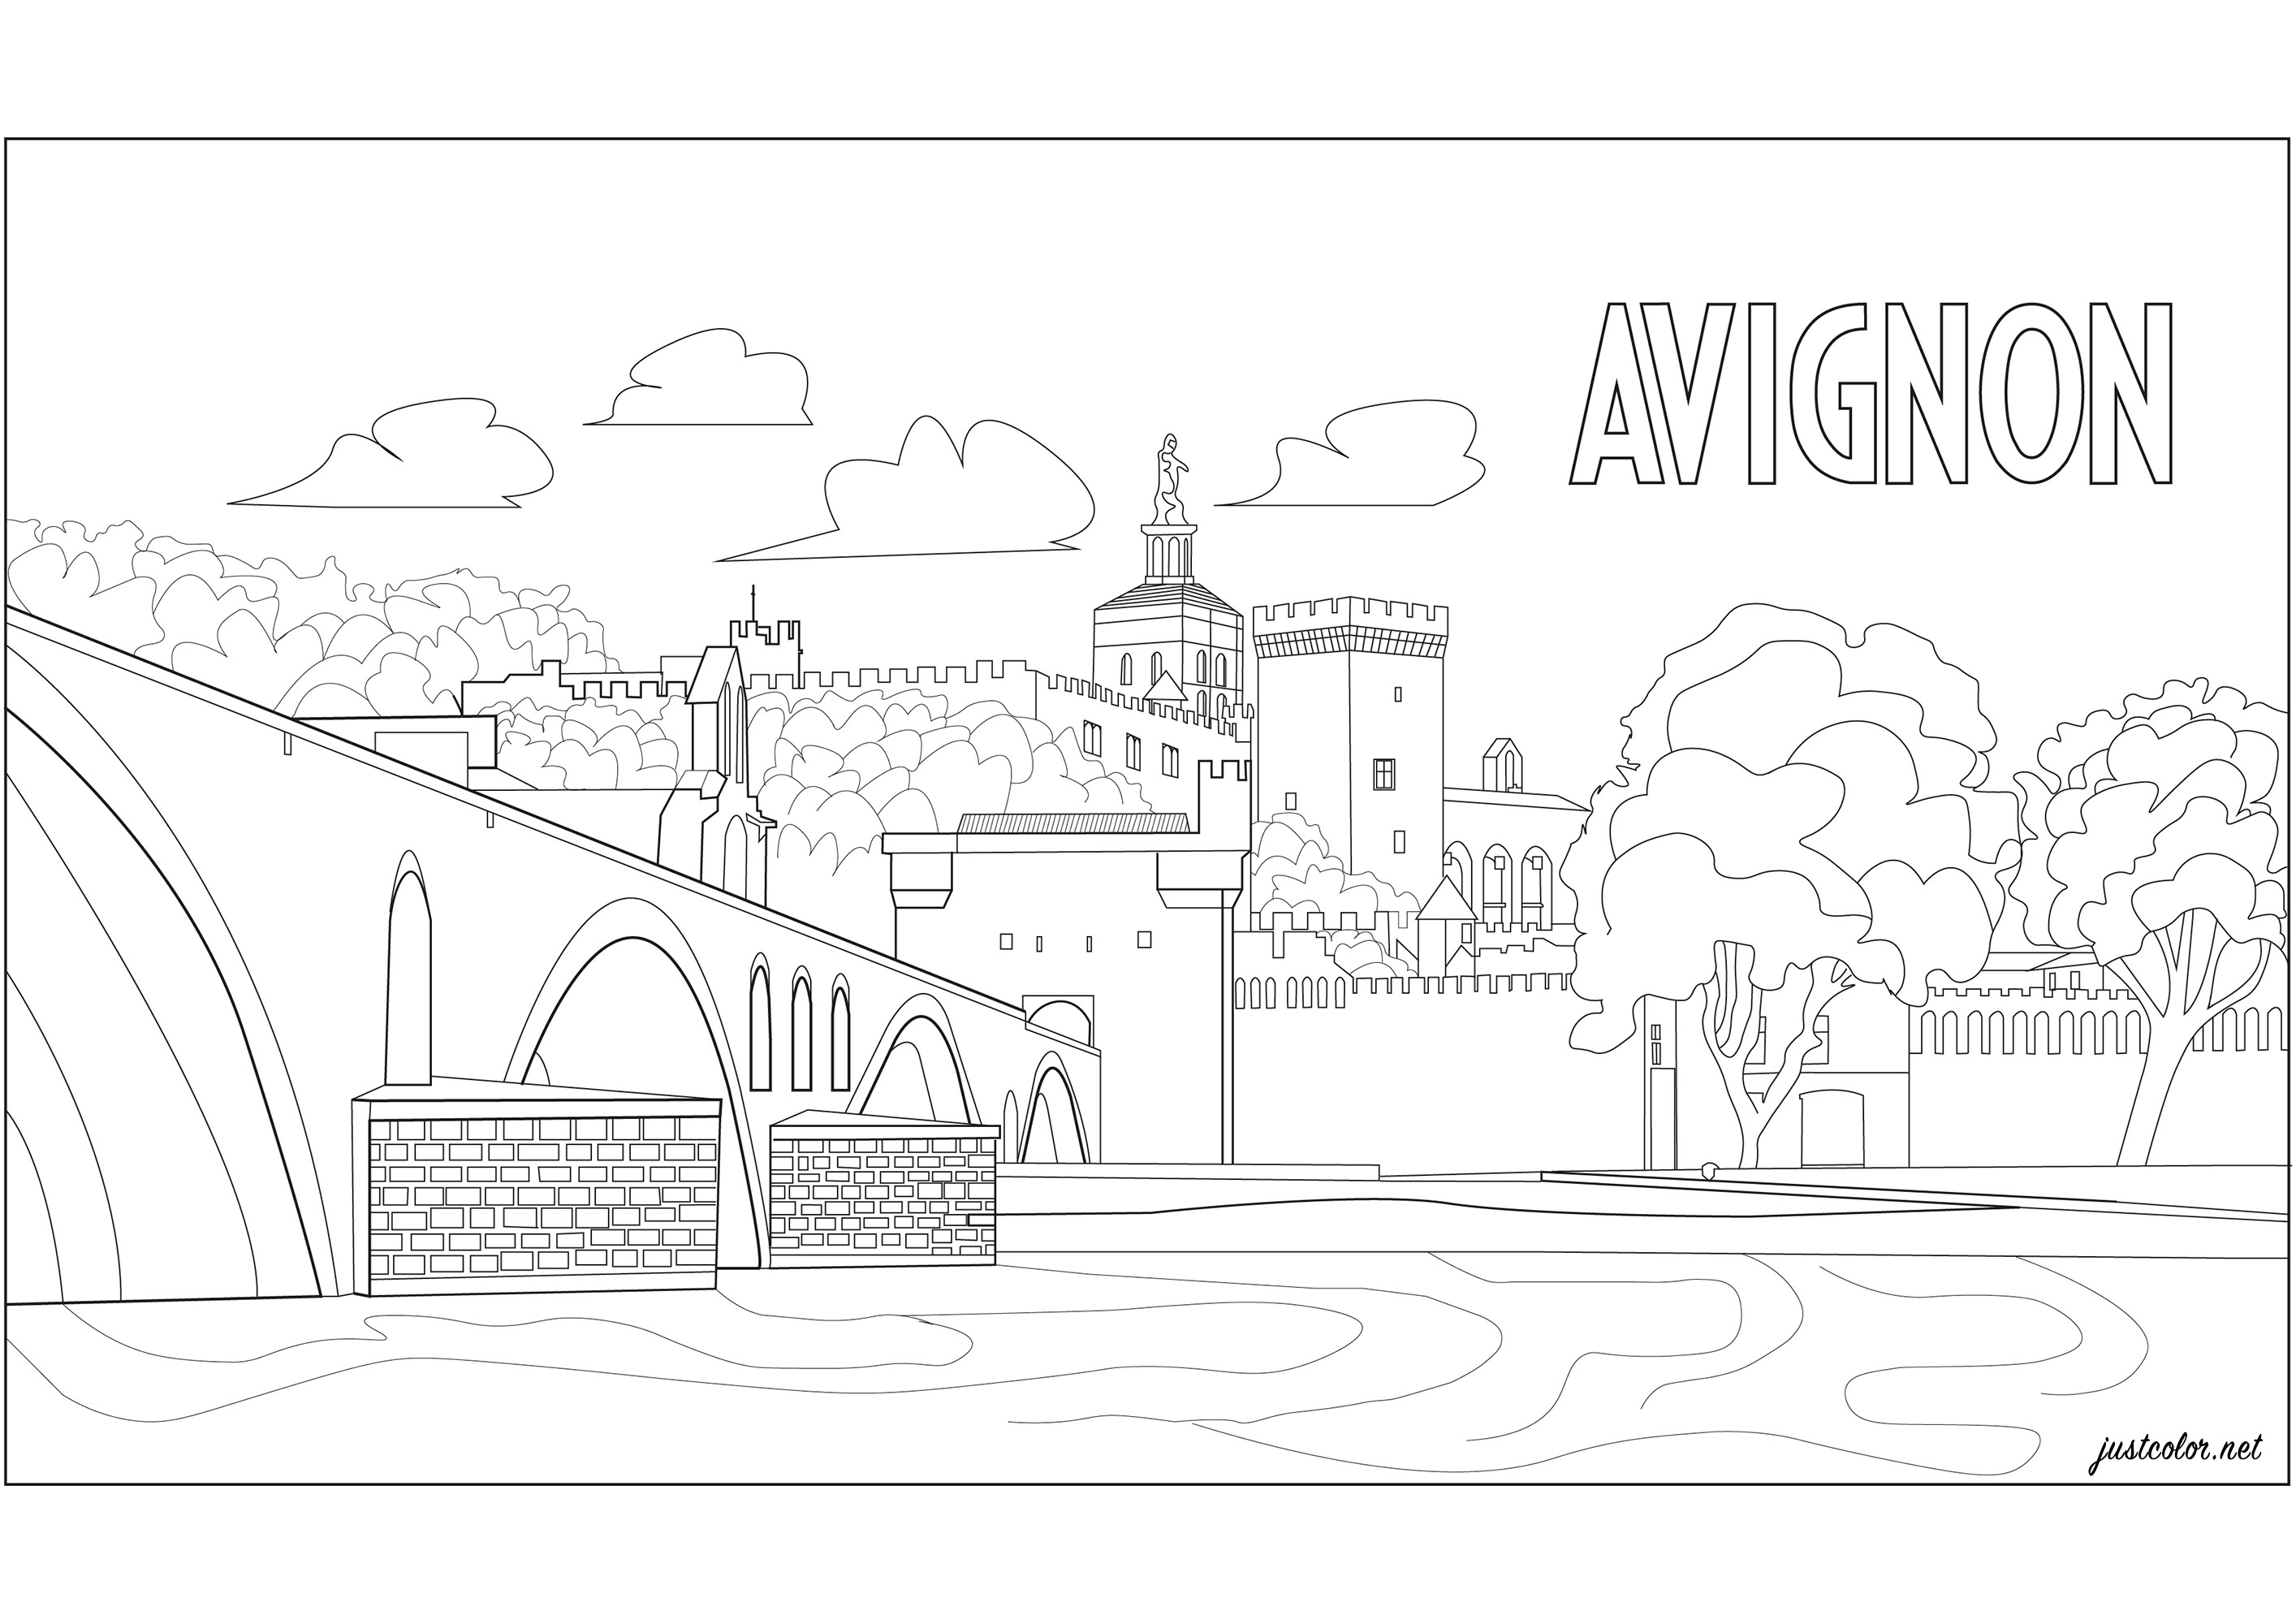 Avignon : Le Palais des Papes et le Pont d'Avignon.Ils sont situés dans le sud de la France sur le bord du Rhône .Le Palais des papes était à la fois forteresse et palais. C’est la plus grande des constructions gothiques du Moyen Âge et le siège de la papauté au XIV siècle. Célèbre pour sa comptine, juste à coté se trouve le pont Saint-Bénézet couramment appelé Pont d'Avignon. C’est un vestige de pont sur le Rhône. Il ne reste que quatre arches, les autres ont été emportées par les crues.